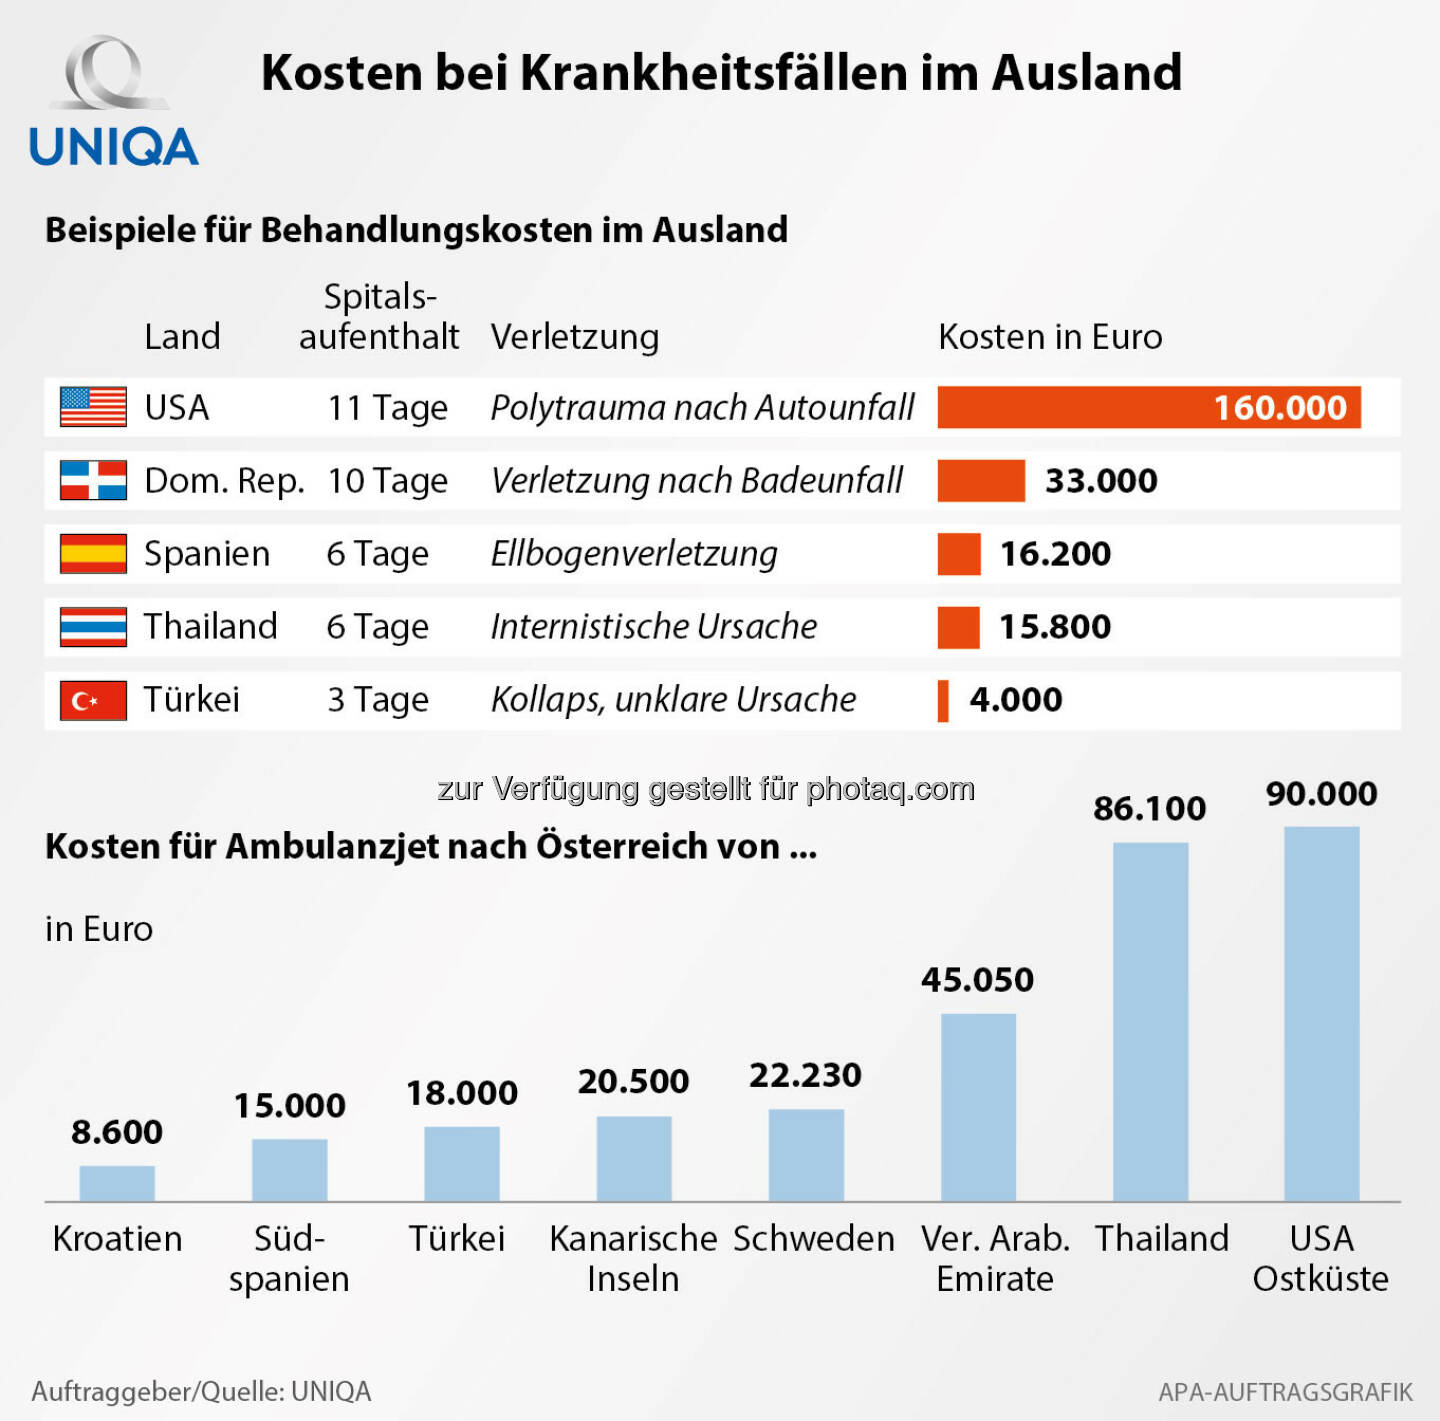 Grafik Kosten bei Krankheitsfällen im Ausland : Fotocredit: Uniqa/APA-Auftragsgrafik